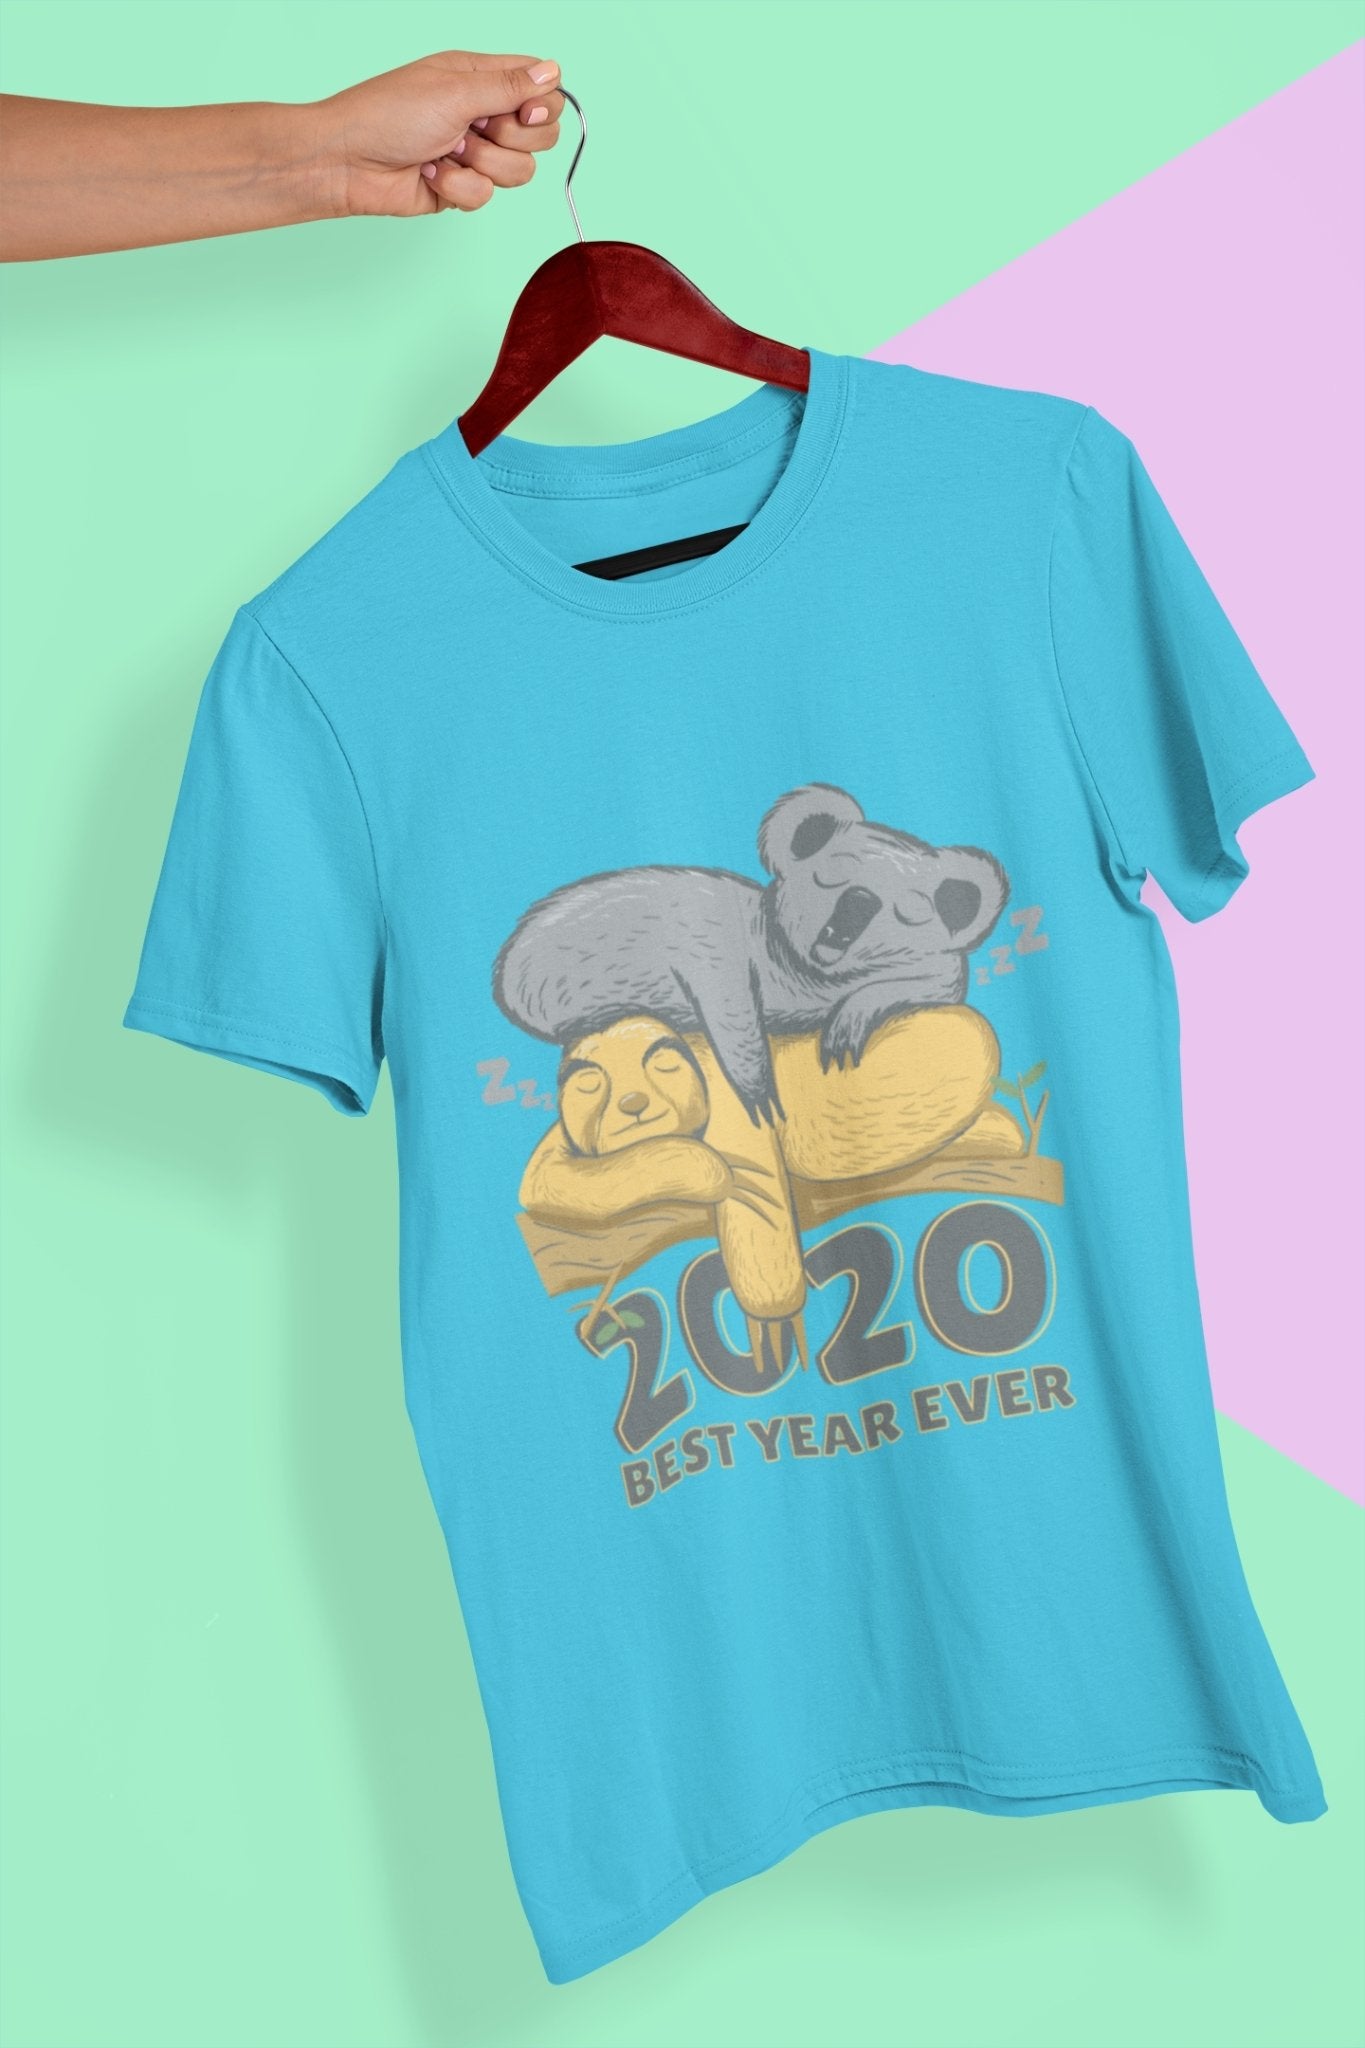 2020 Best Year Ever Women Half Sleeves T-shirt- FunkyTeesClub - Funky Tees Club